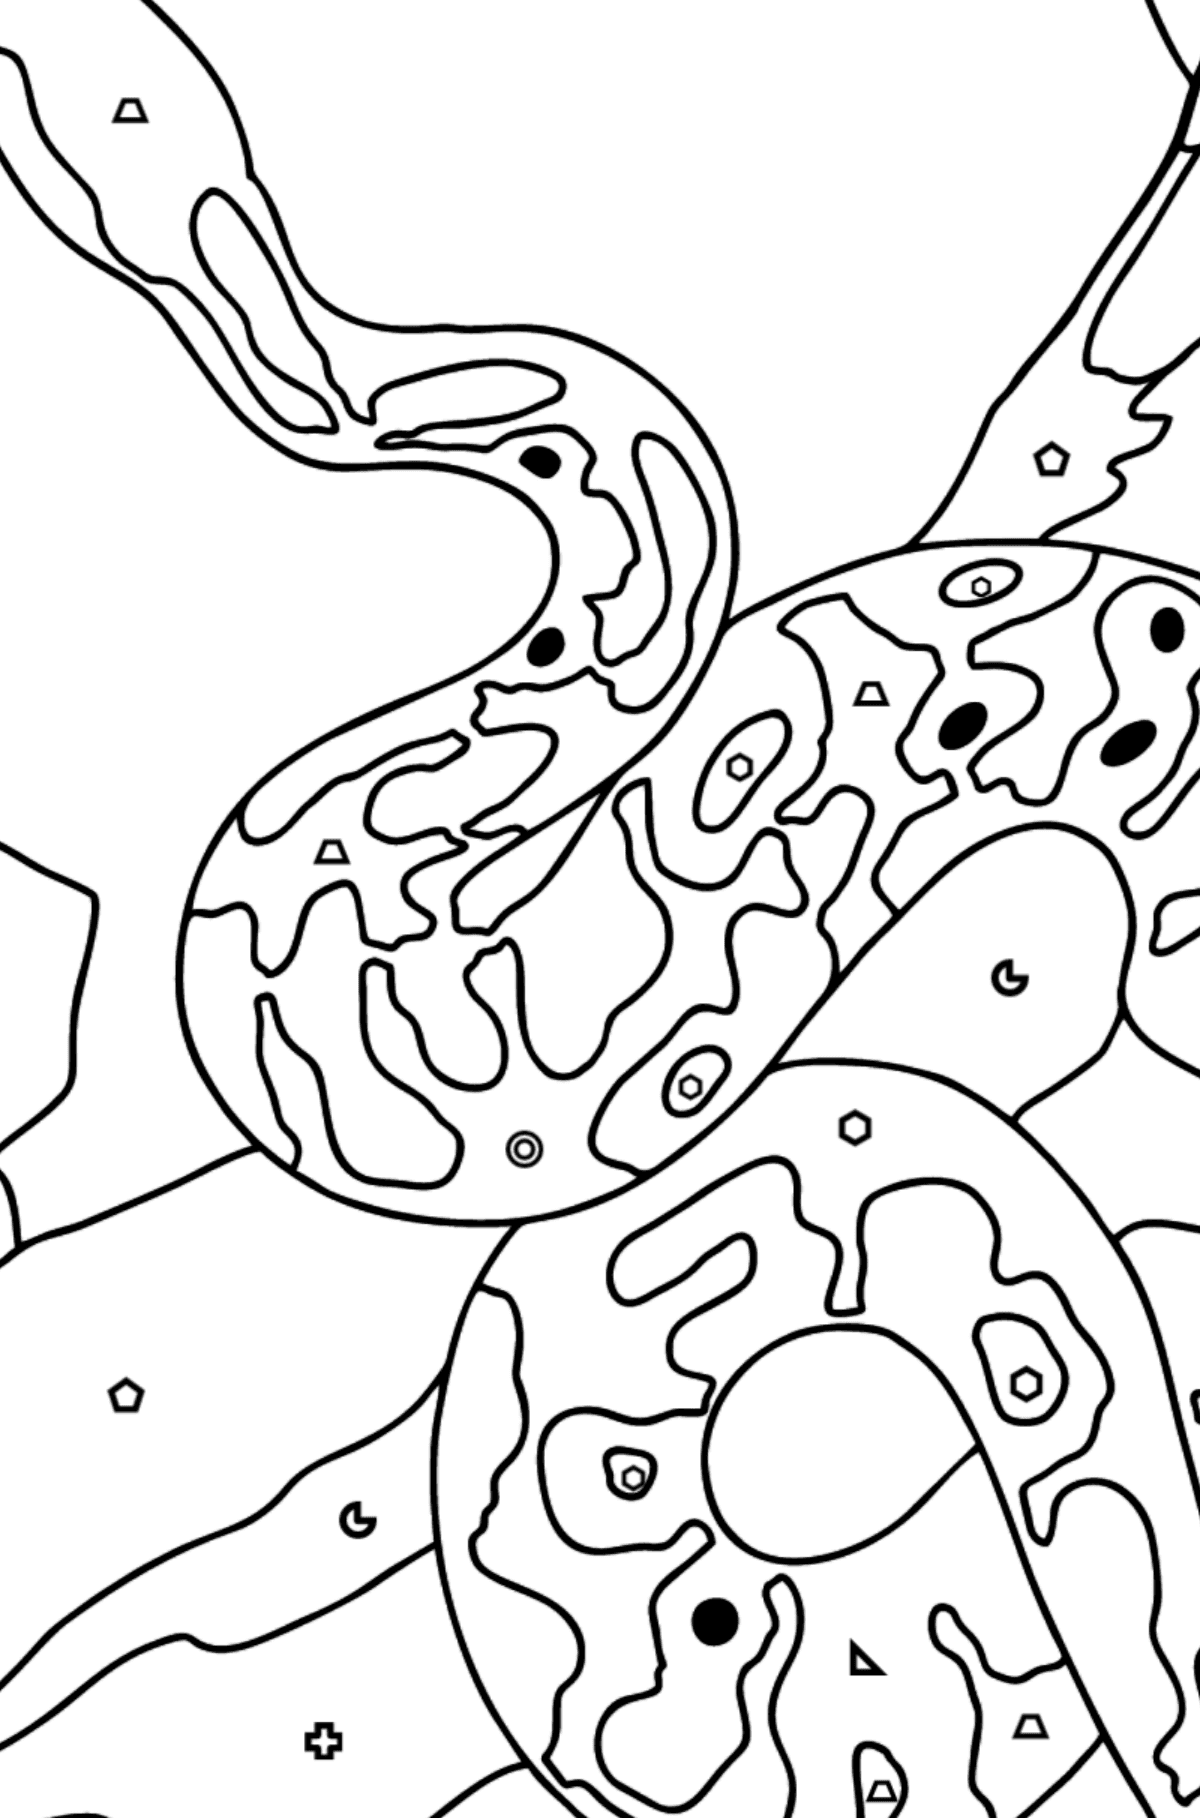 Tegning til farvning slange (vanskeligt) - Farvelægning af geometriske figurer for børn